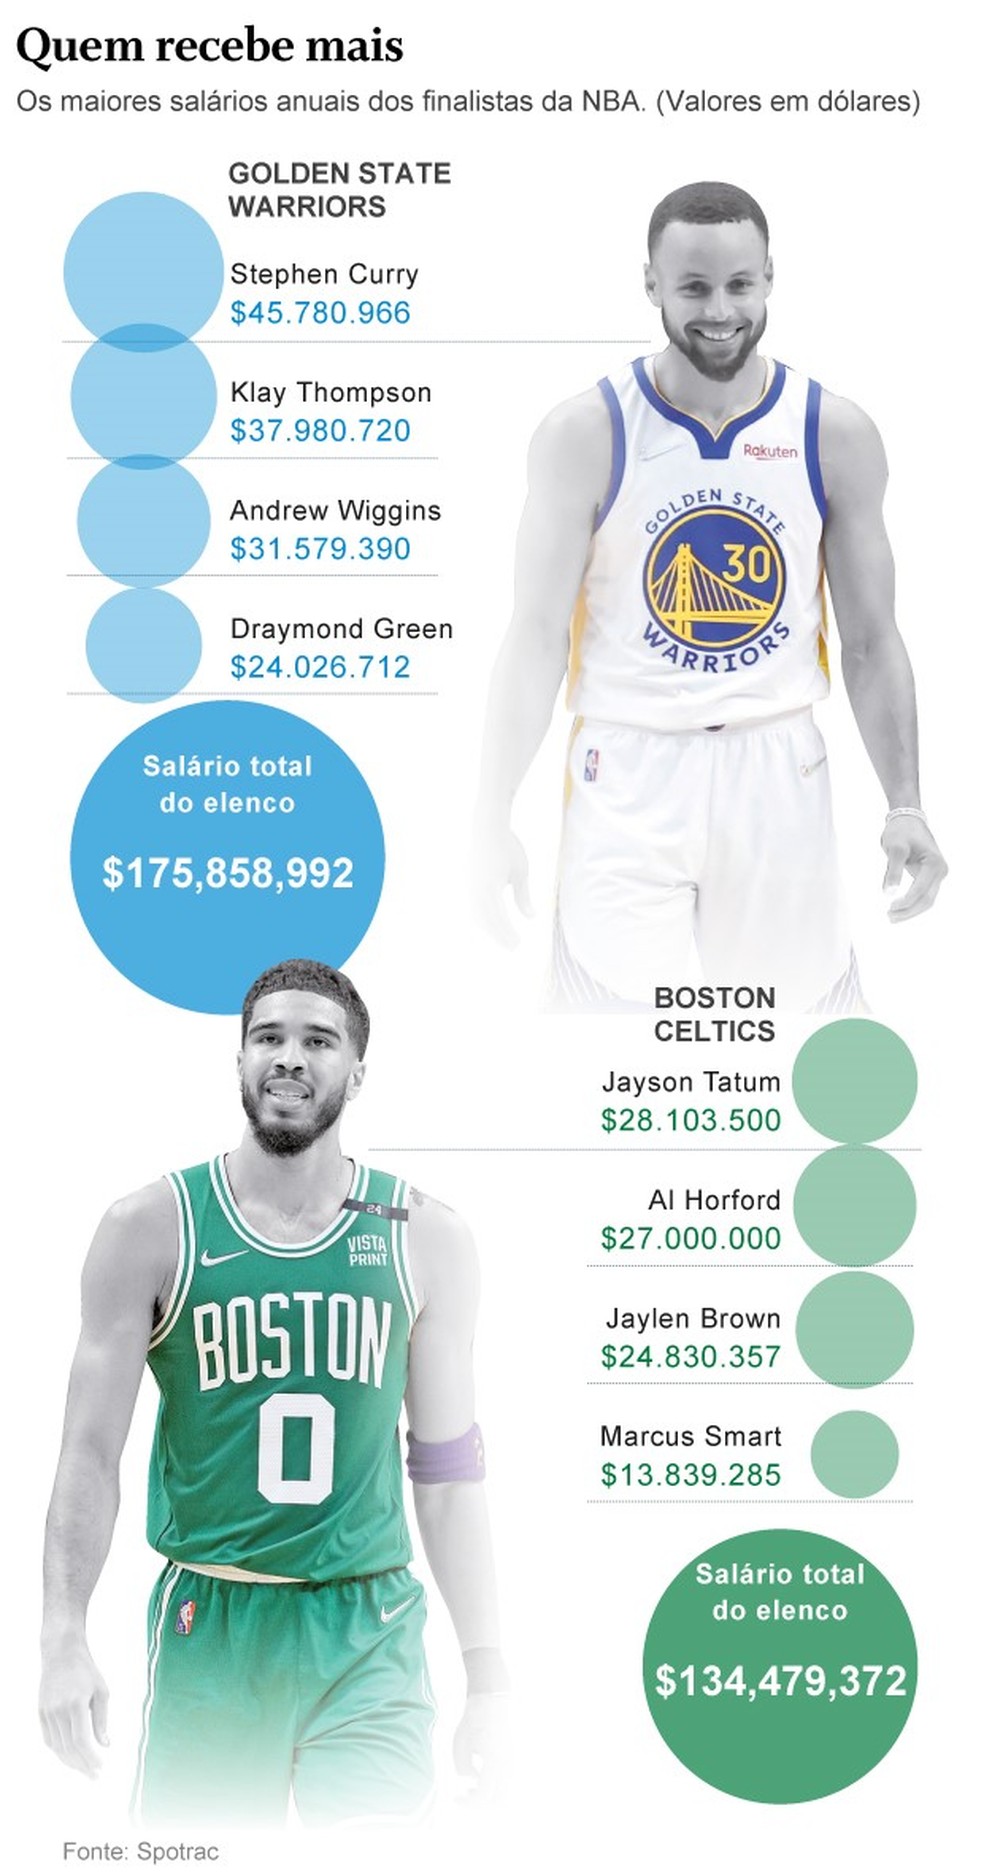 Top 10 maiores salários da NBA 2021/22 - Quinto Quarto